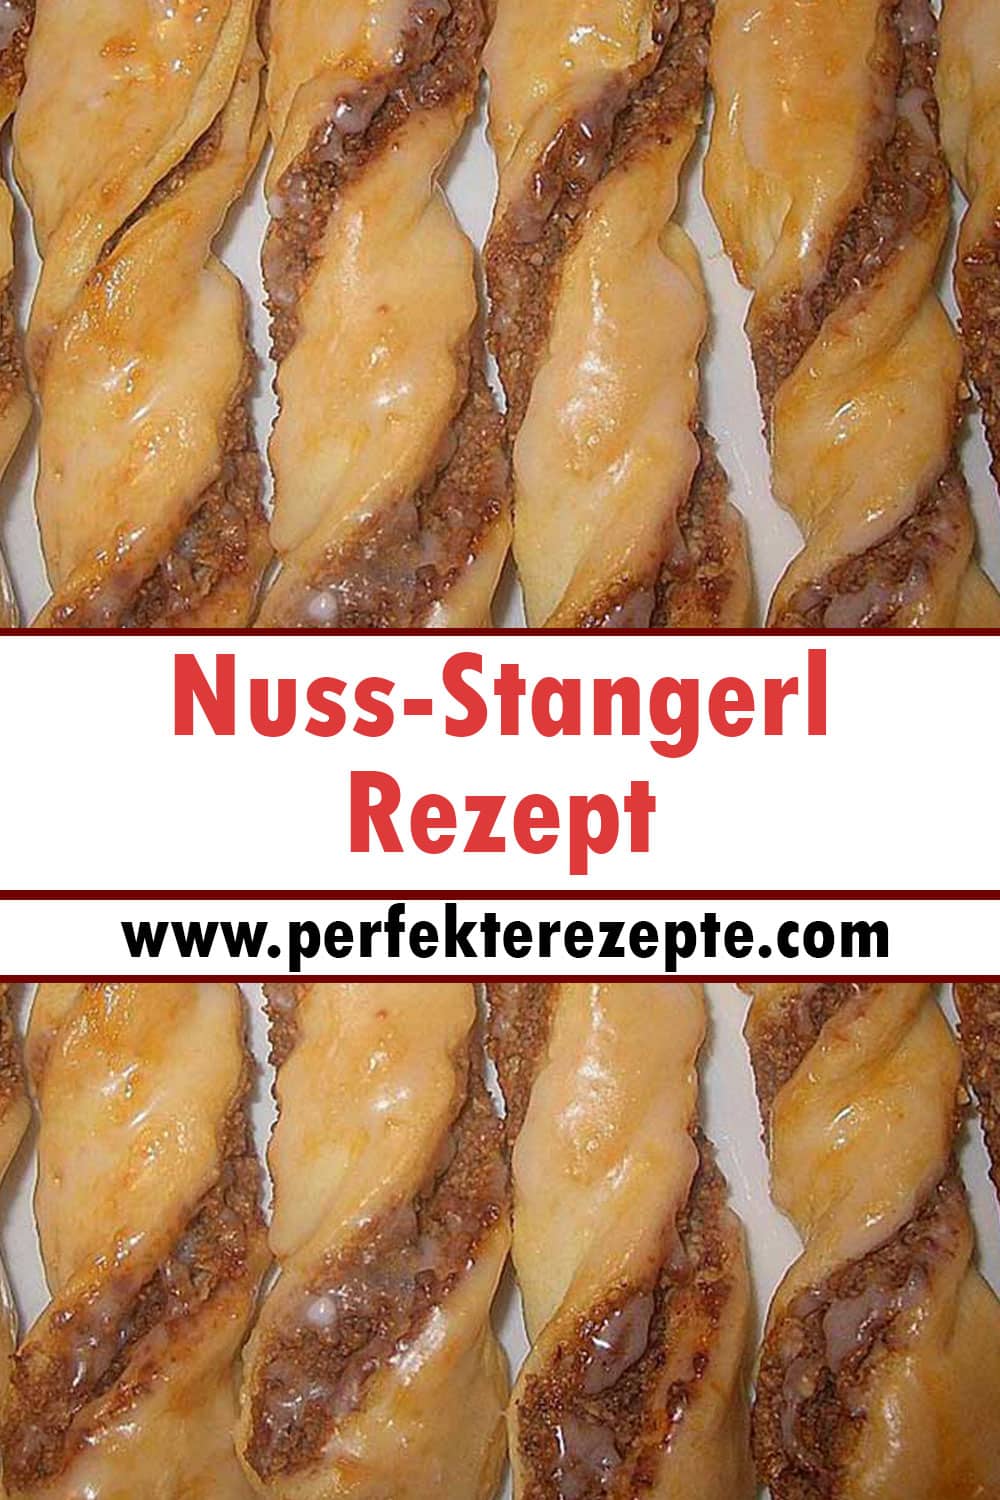 Nuss-Stangerl Rezept